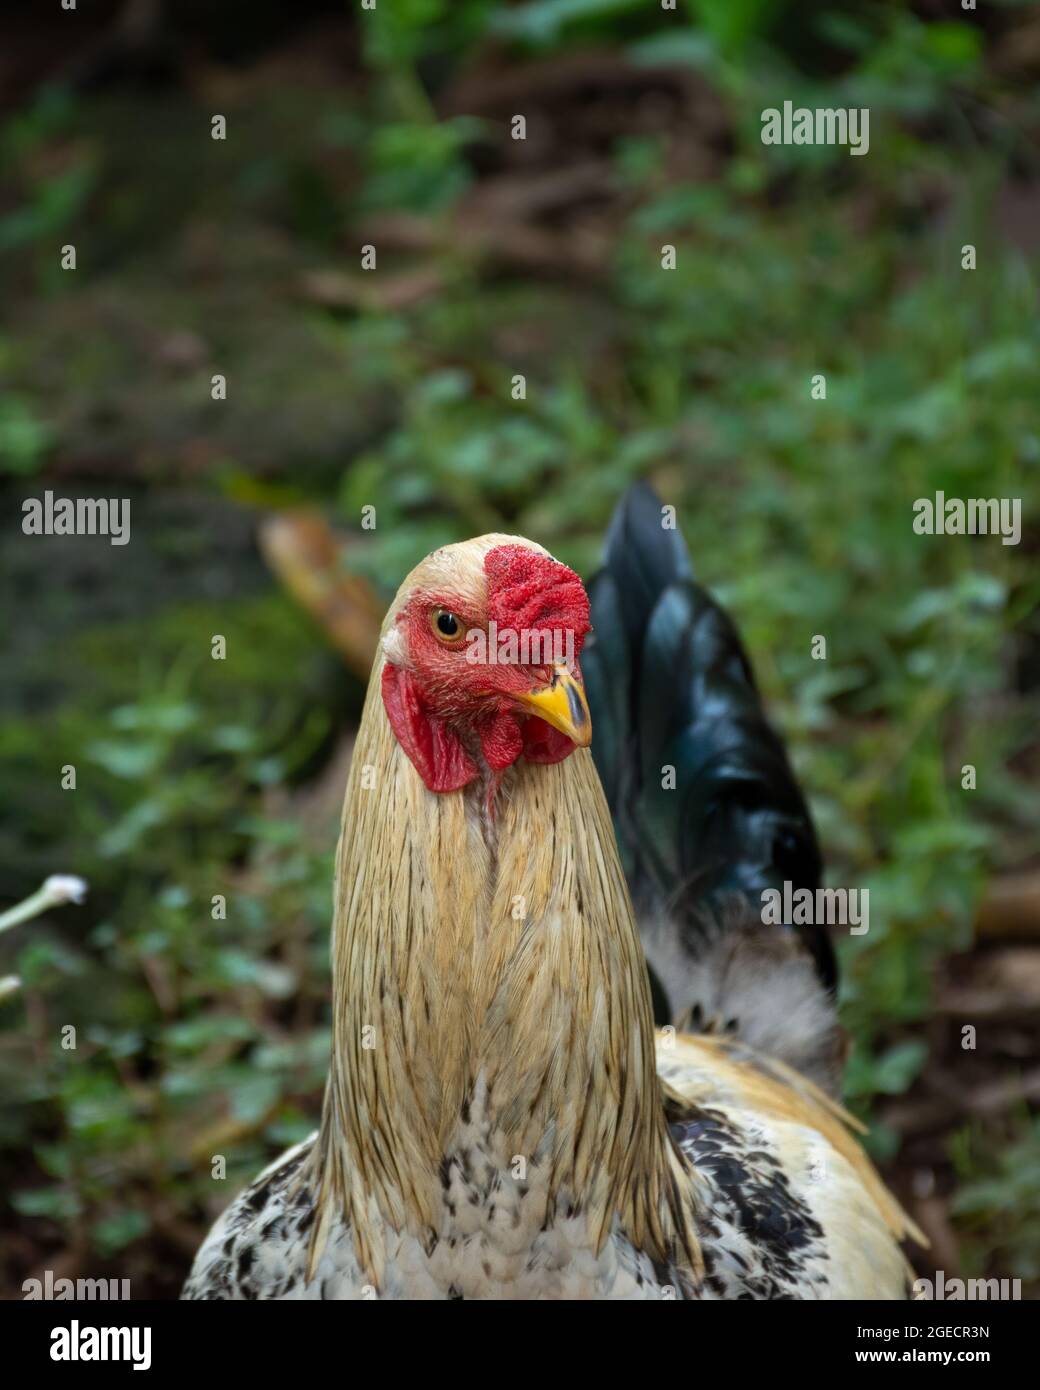 Kopfschuss eines jungen Hähnchens (Gallus gallus domesticus) oder Hahns, das sich im Garten bewegt. Nutztiere oder Nutztiere. Stockfoto